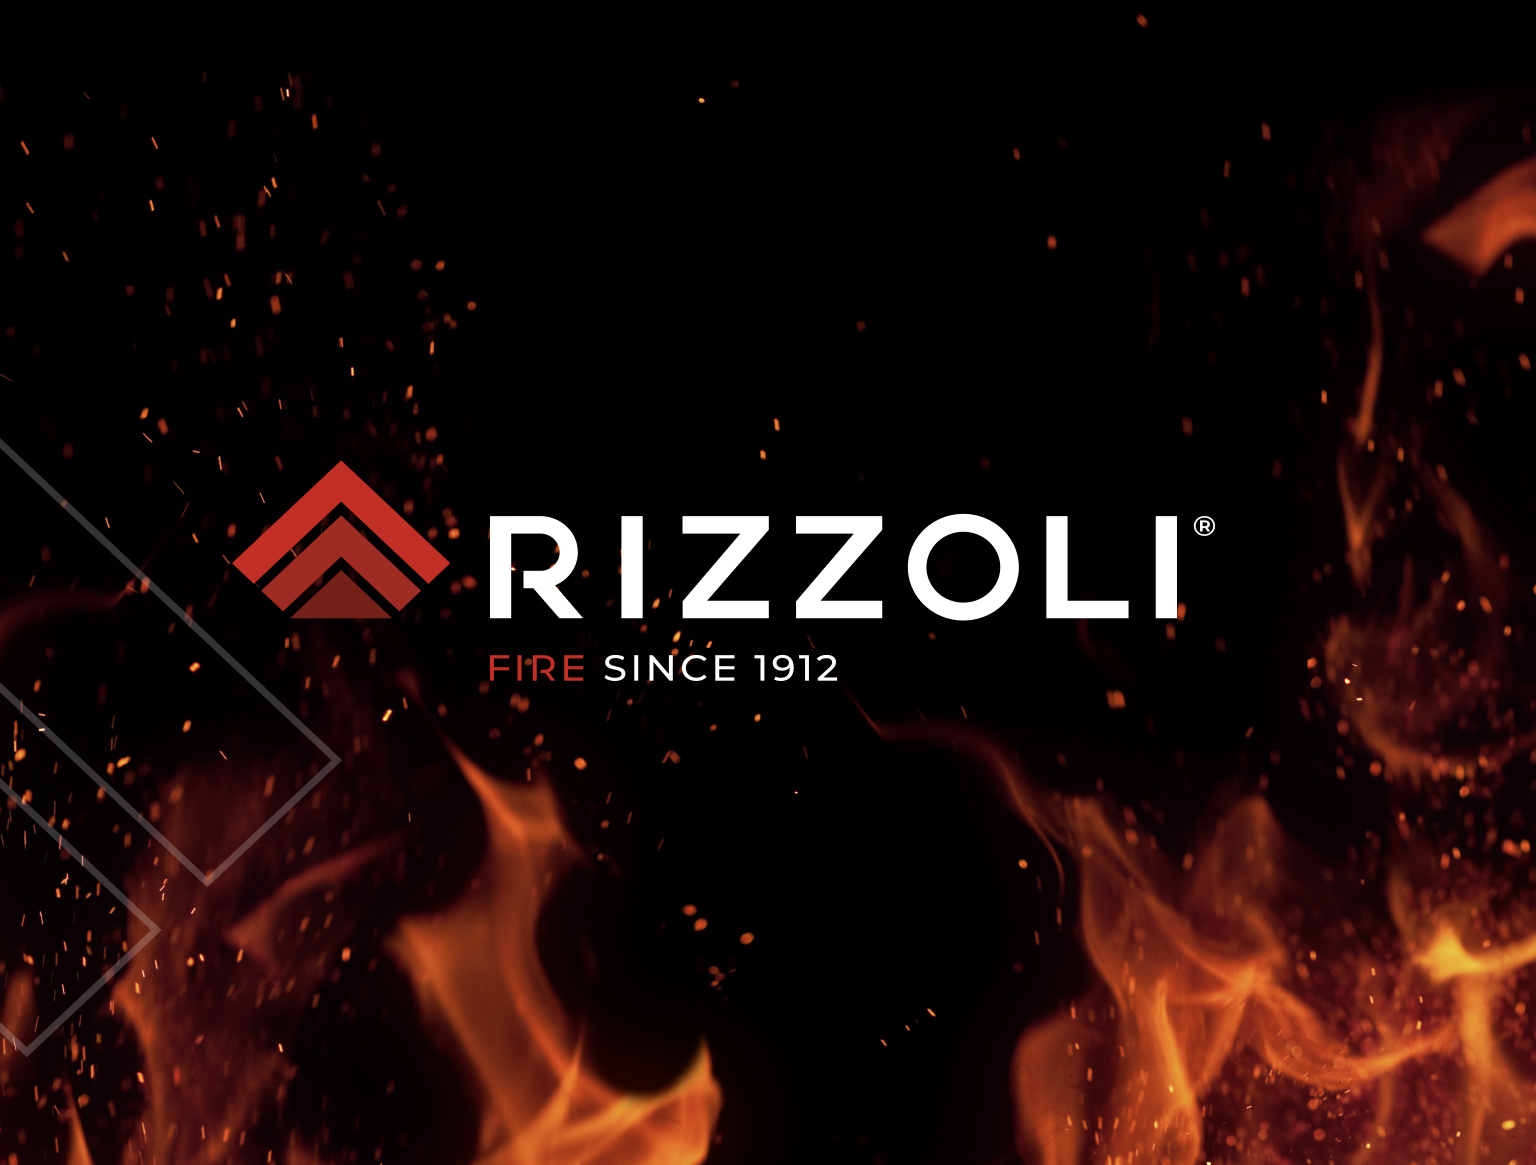 Nasce dal fuoco e punta al futuro:Tunnel Studios disegna il nuovo logo Rizzoli,un vero e proprio omaggio al DNA aziendale.